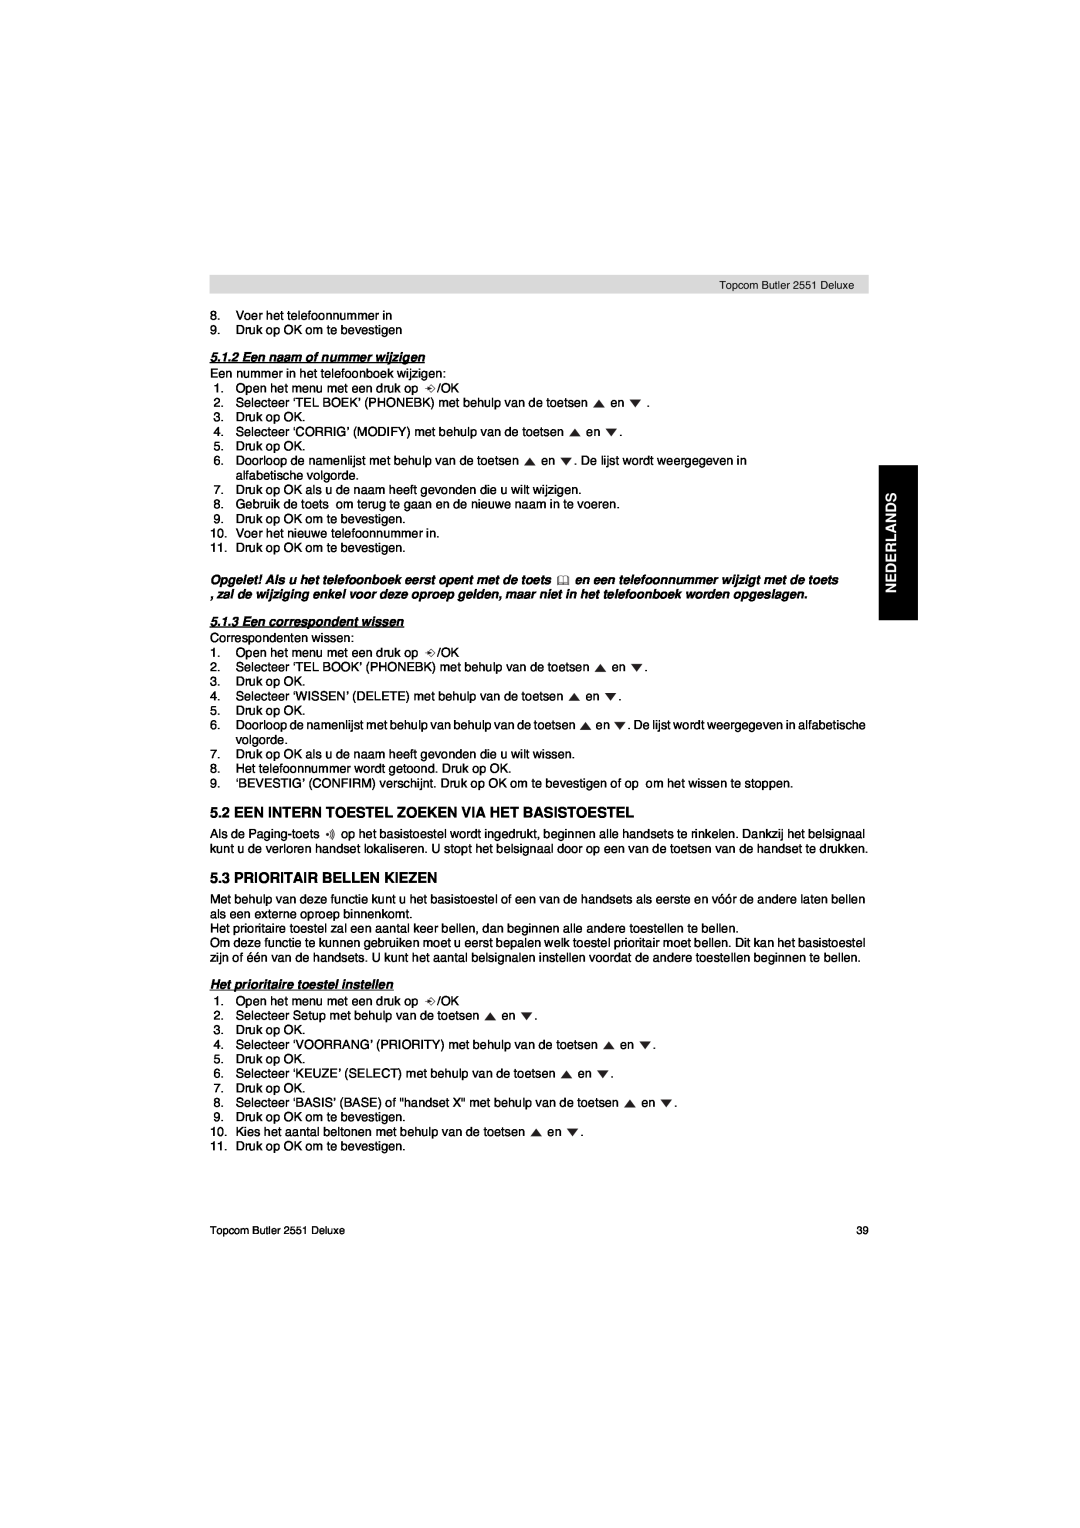 Topcom 2551 manual Een Intern Toestel Zoeken Via Het Basistoestel, Prioritair Bellen Kiezen, Nederlands 